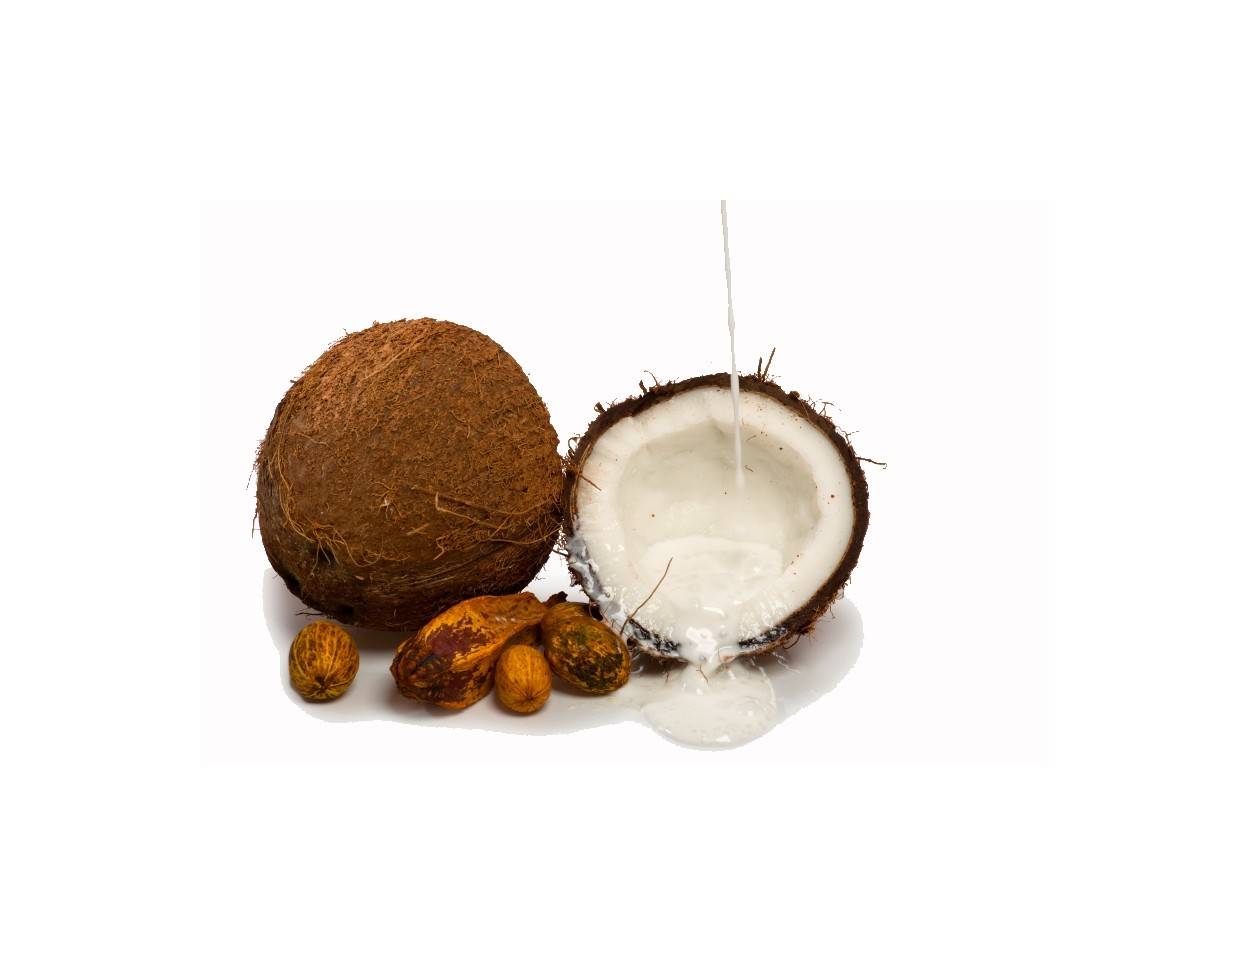 Kokosnuss und Kokosmilch